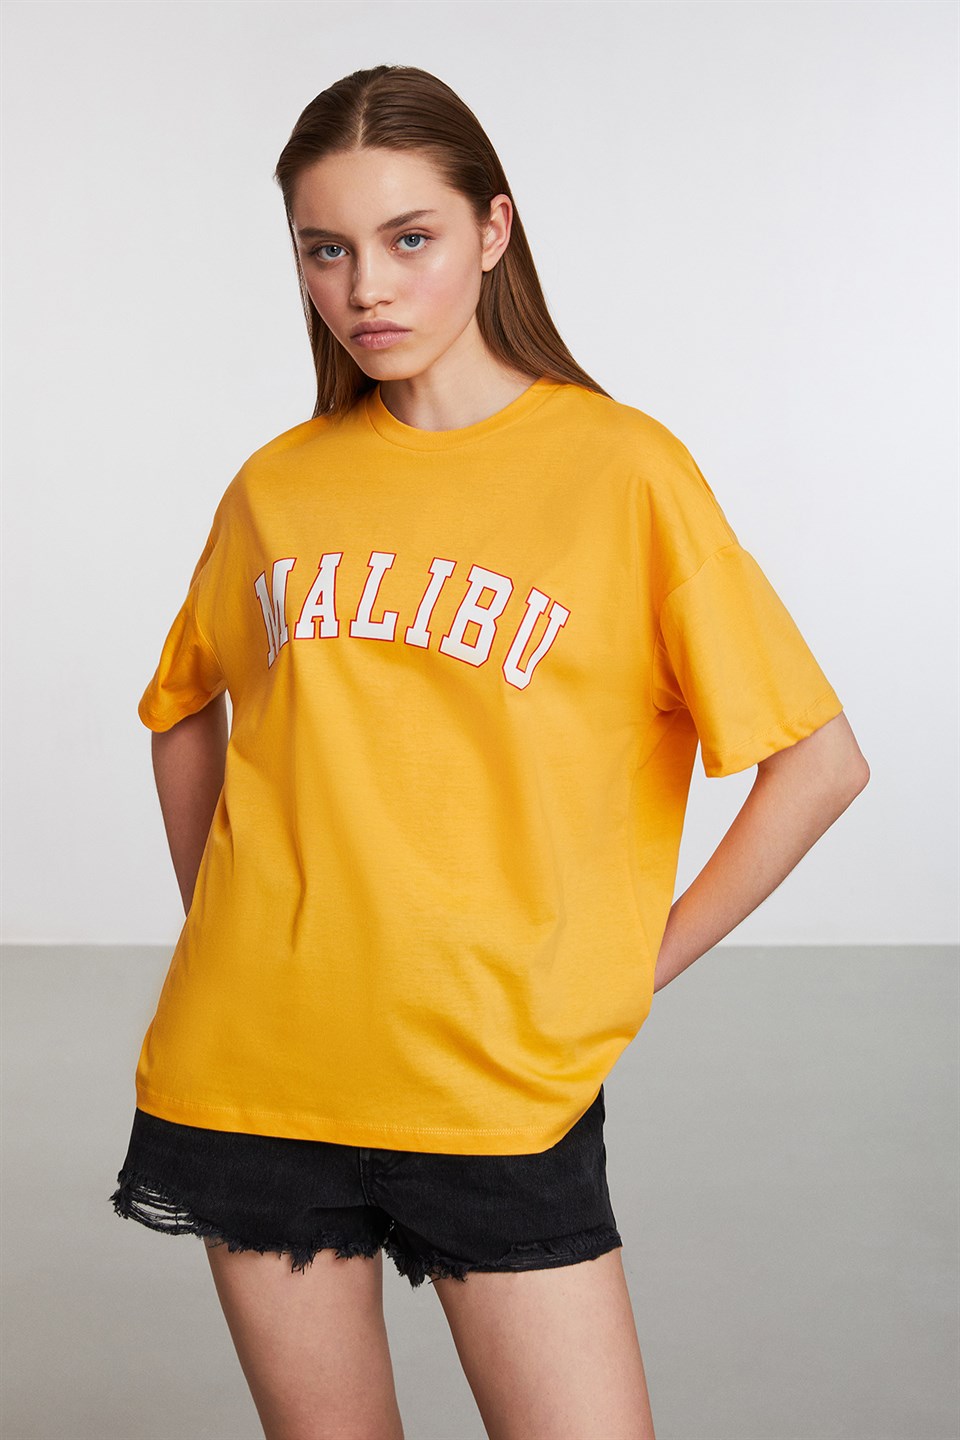 PUERTO Kadın Safran Sarı Baskılı Yuvarlak Yaka Comfort Fit T-Shirt